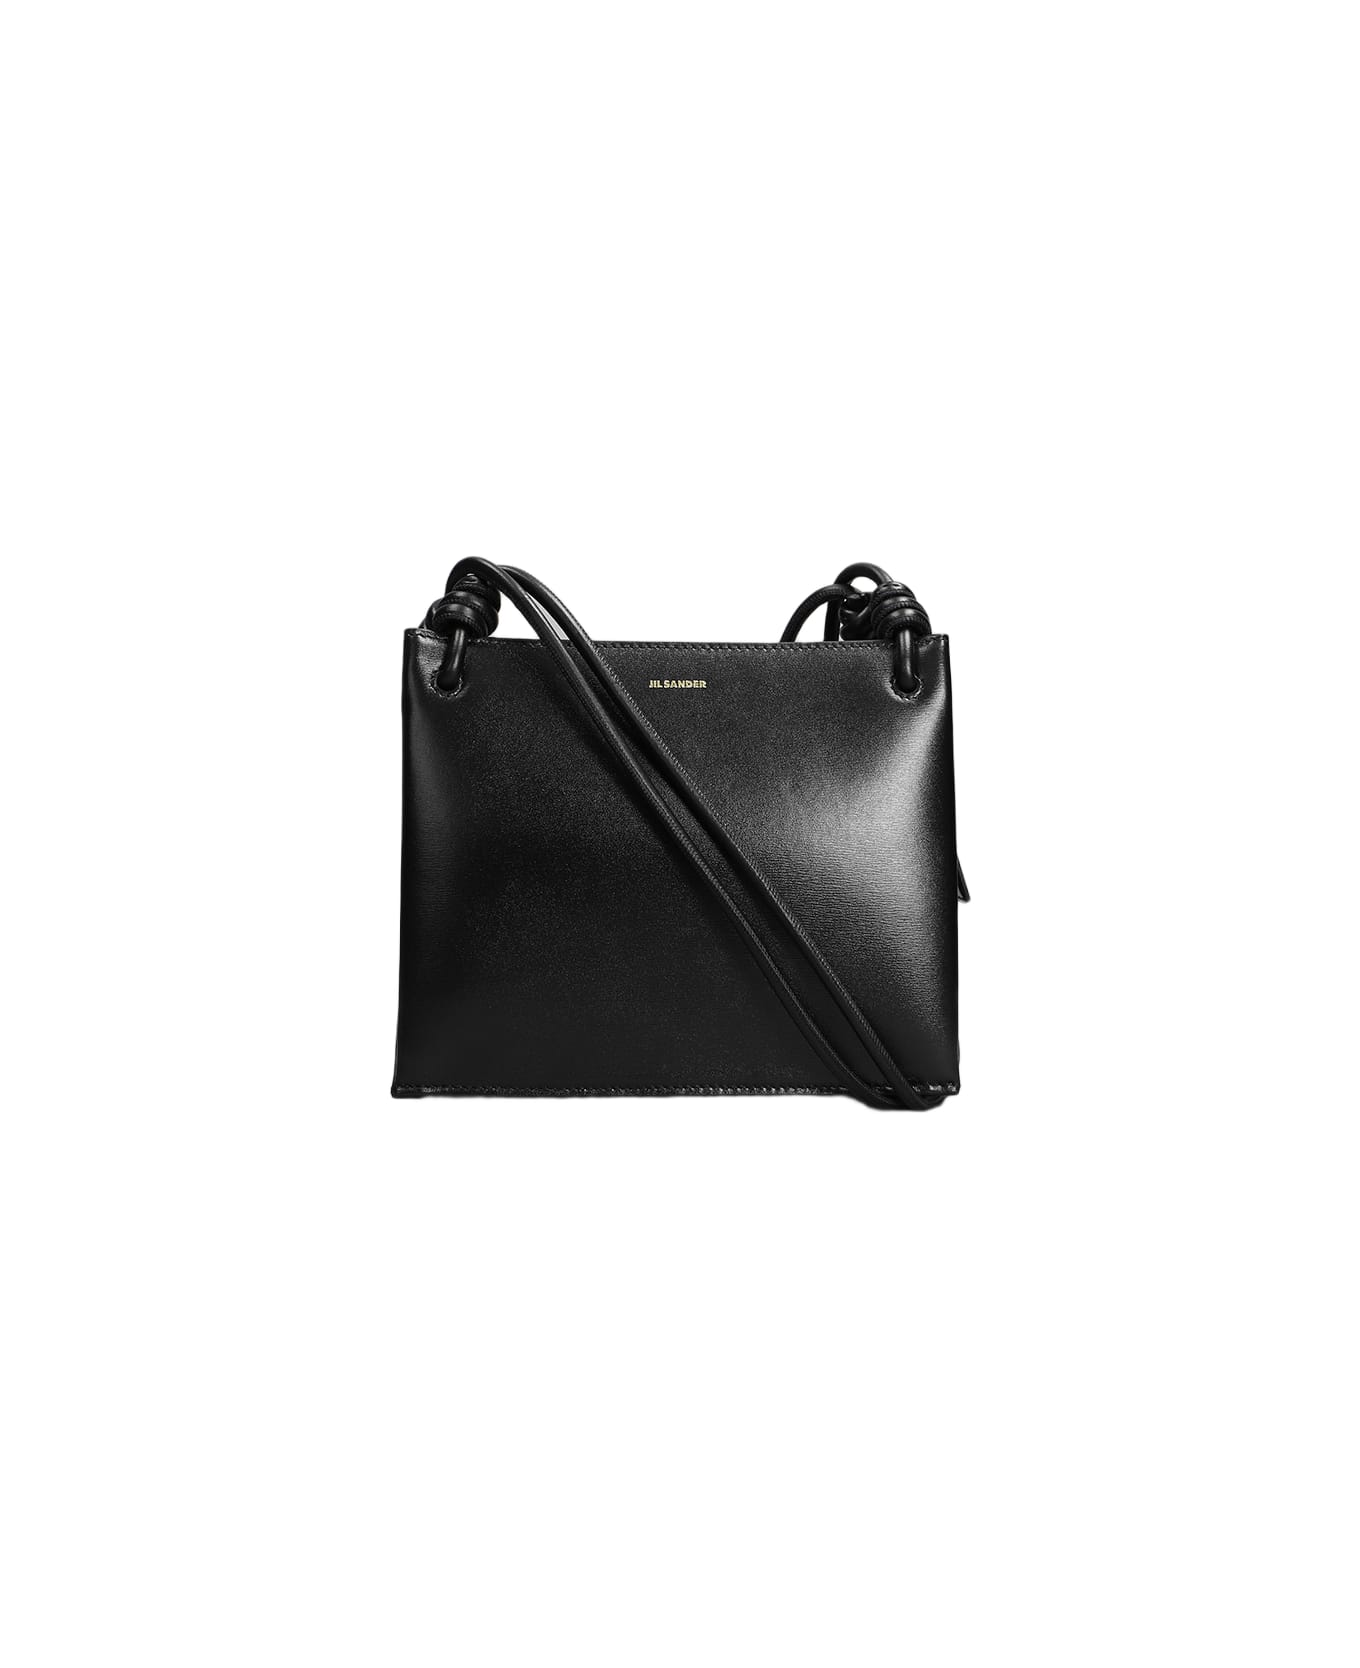 Jil Sander Black Leather Small Giro Shoulder Bag - 001